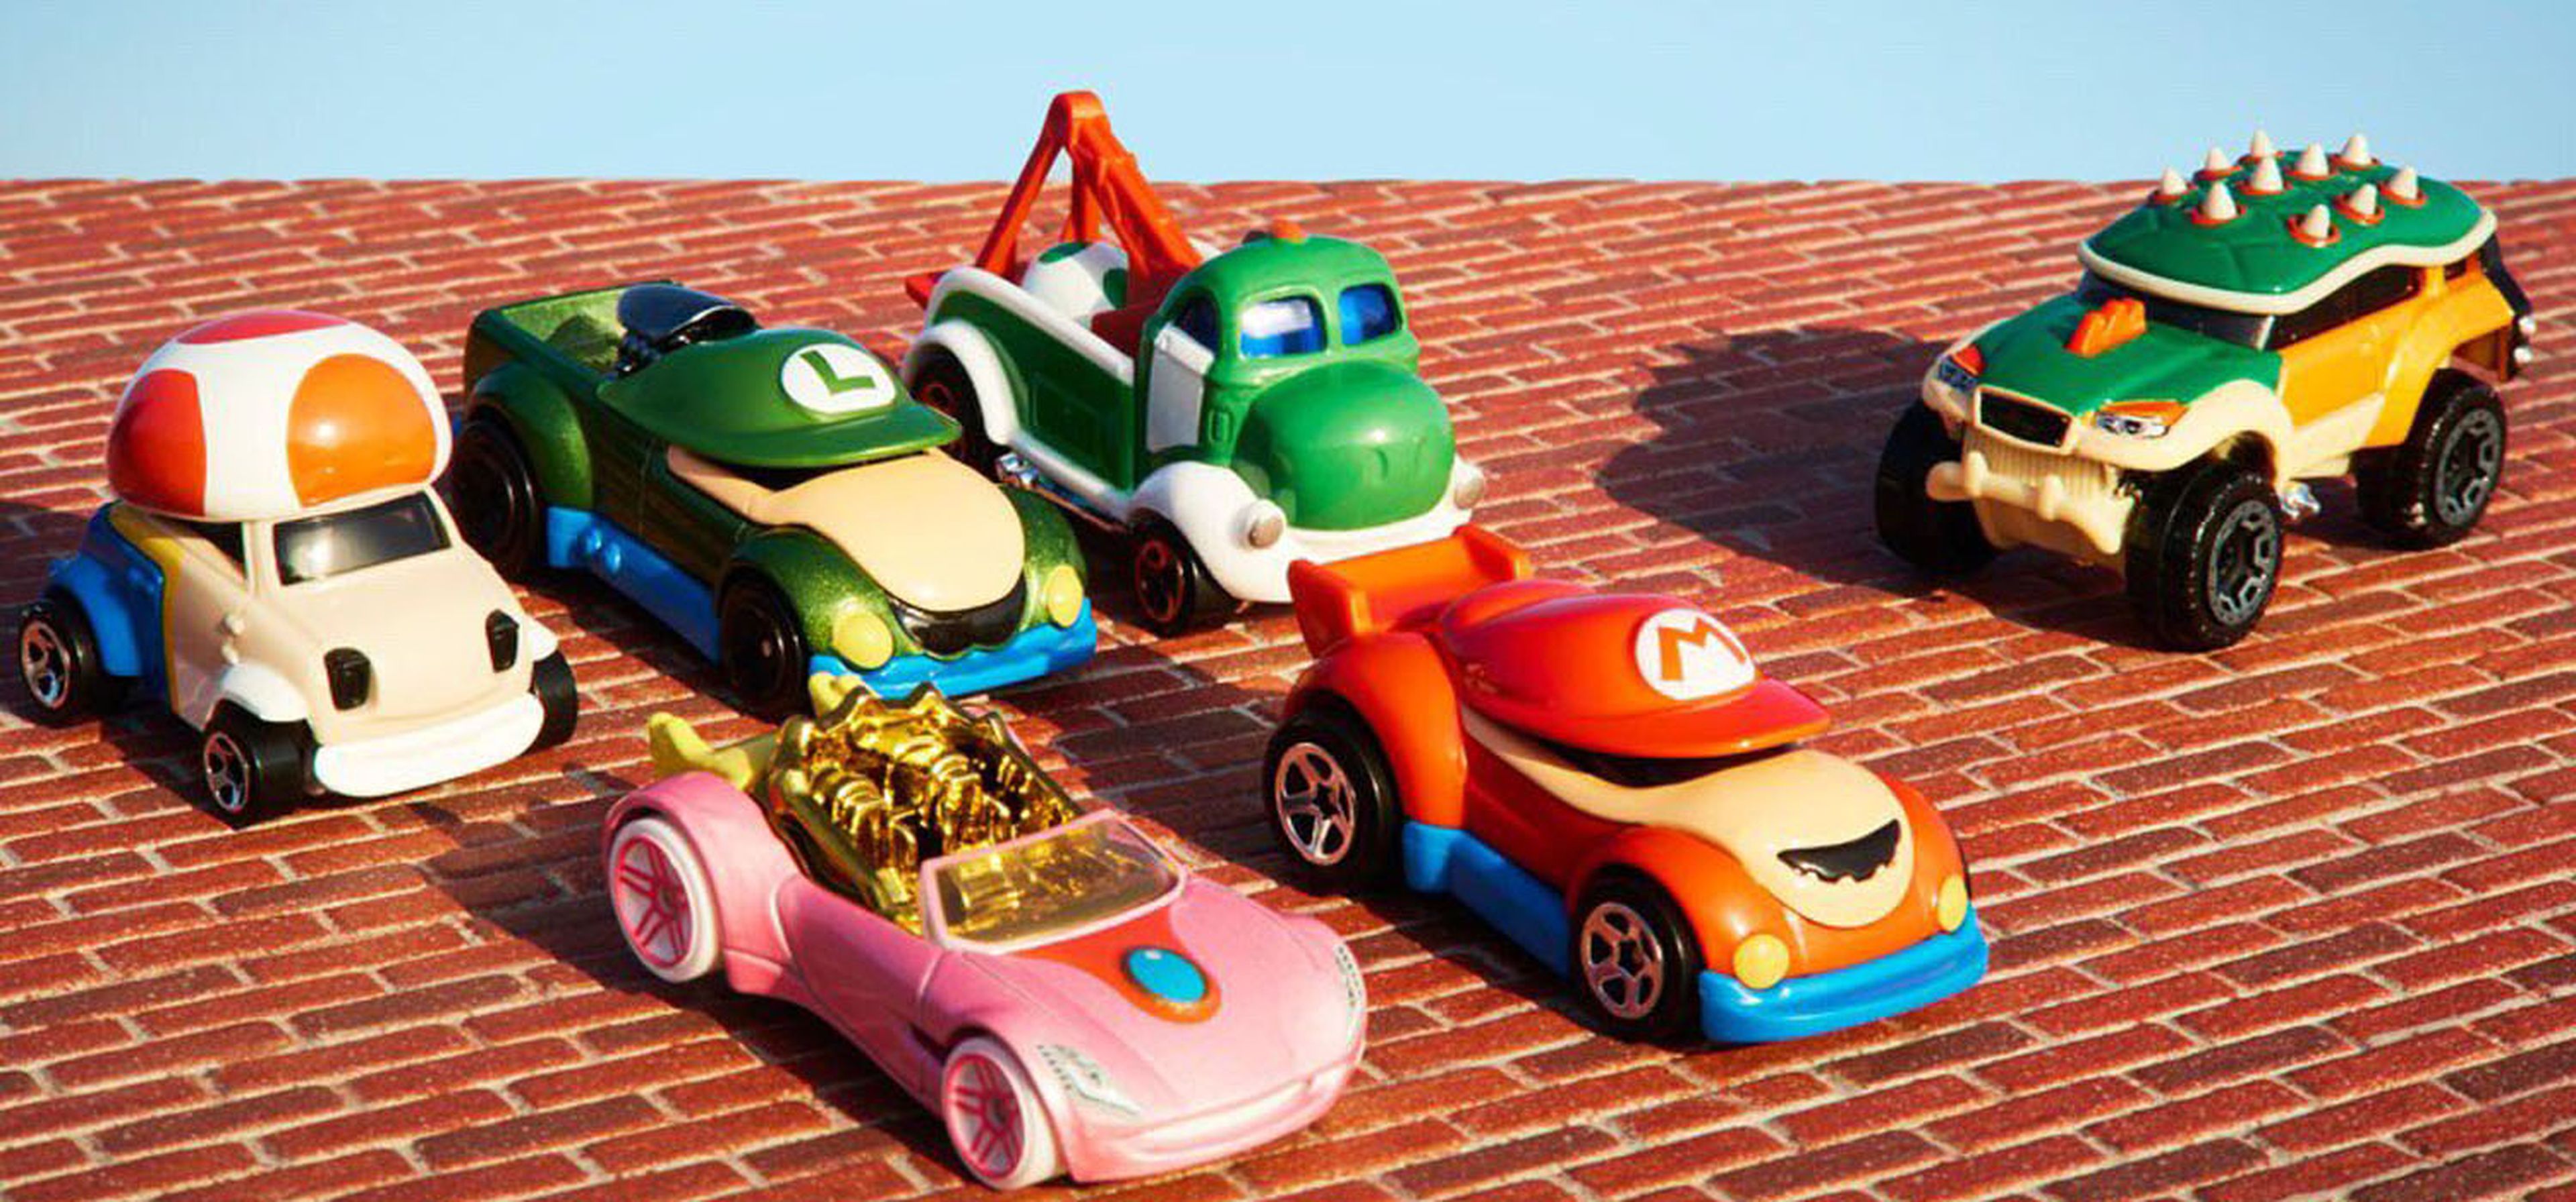 Estos son los 6 nuevos coches que formarán parte de la colección de Hot Wheels ambientada en Super Mario Bros.